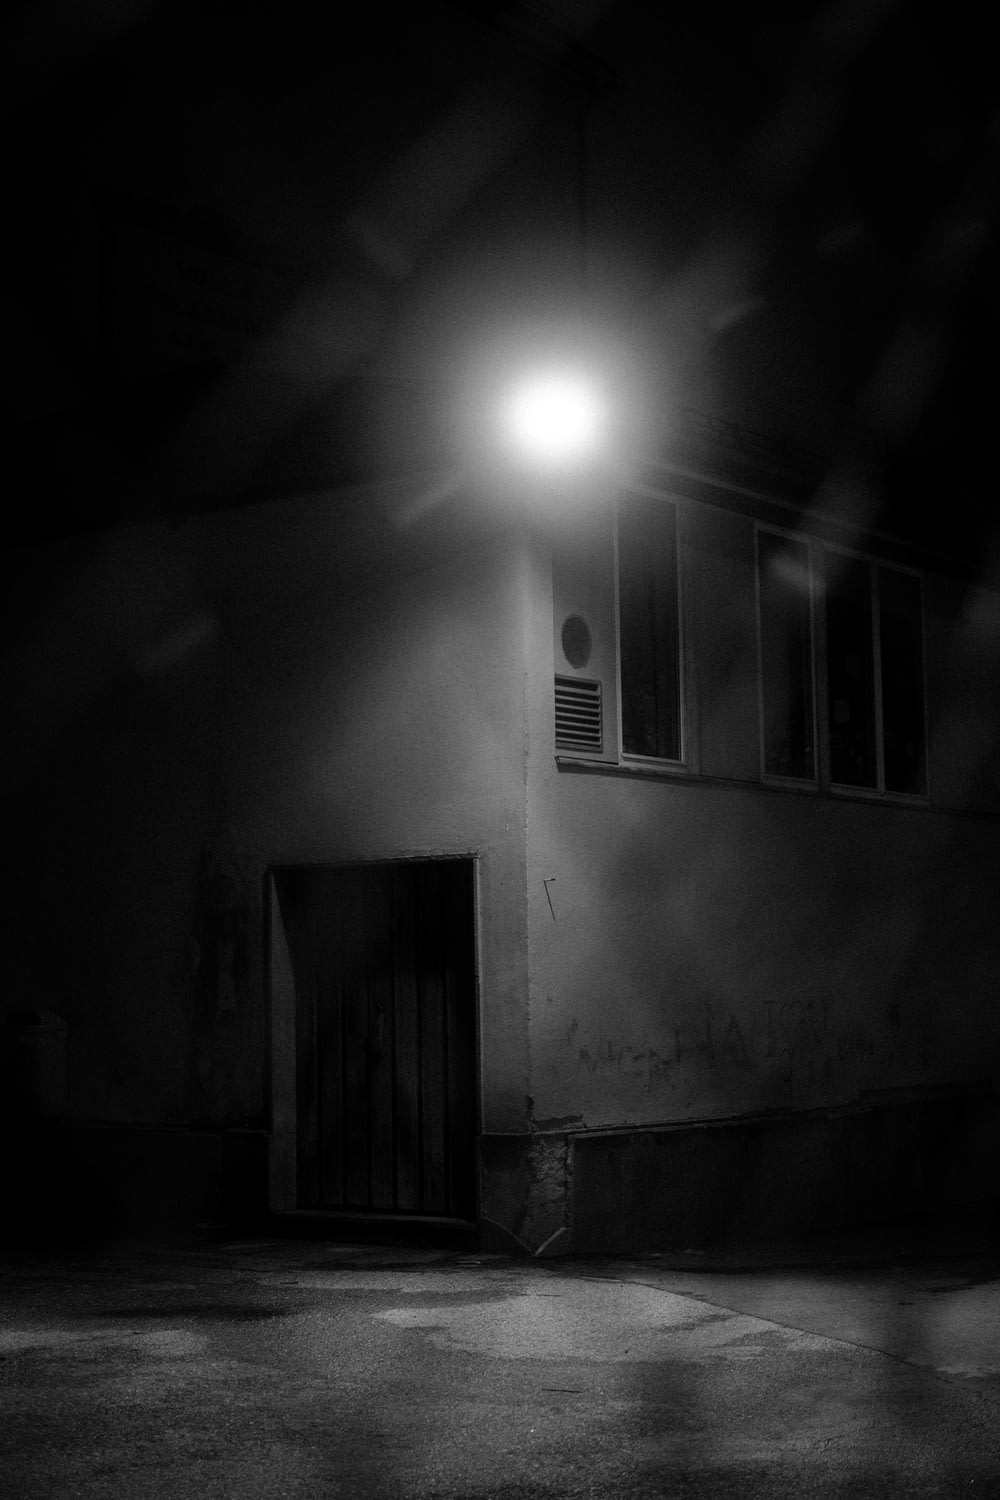 Foto in scala di grigi della lampadina accesa vicino alla finestra